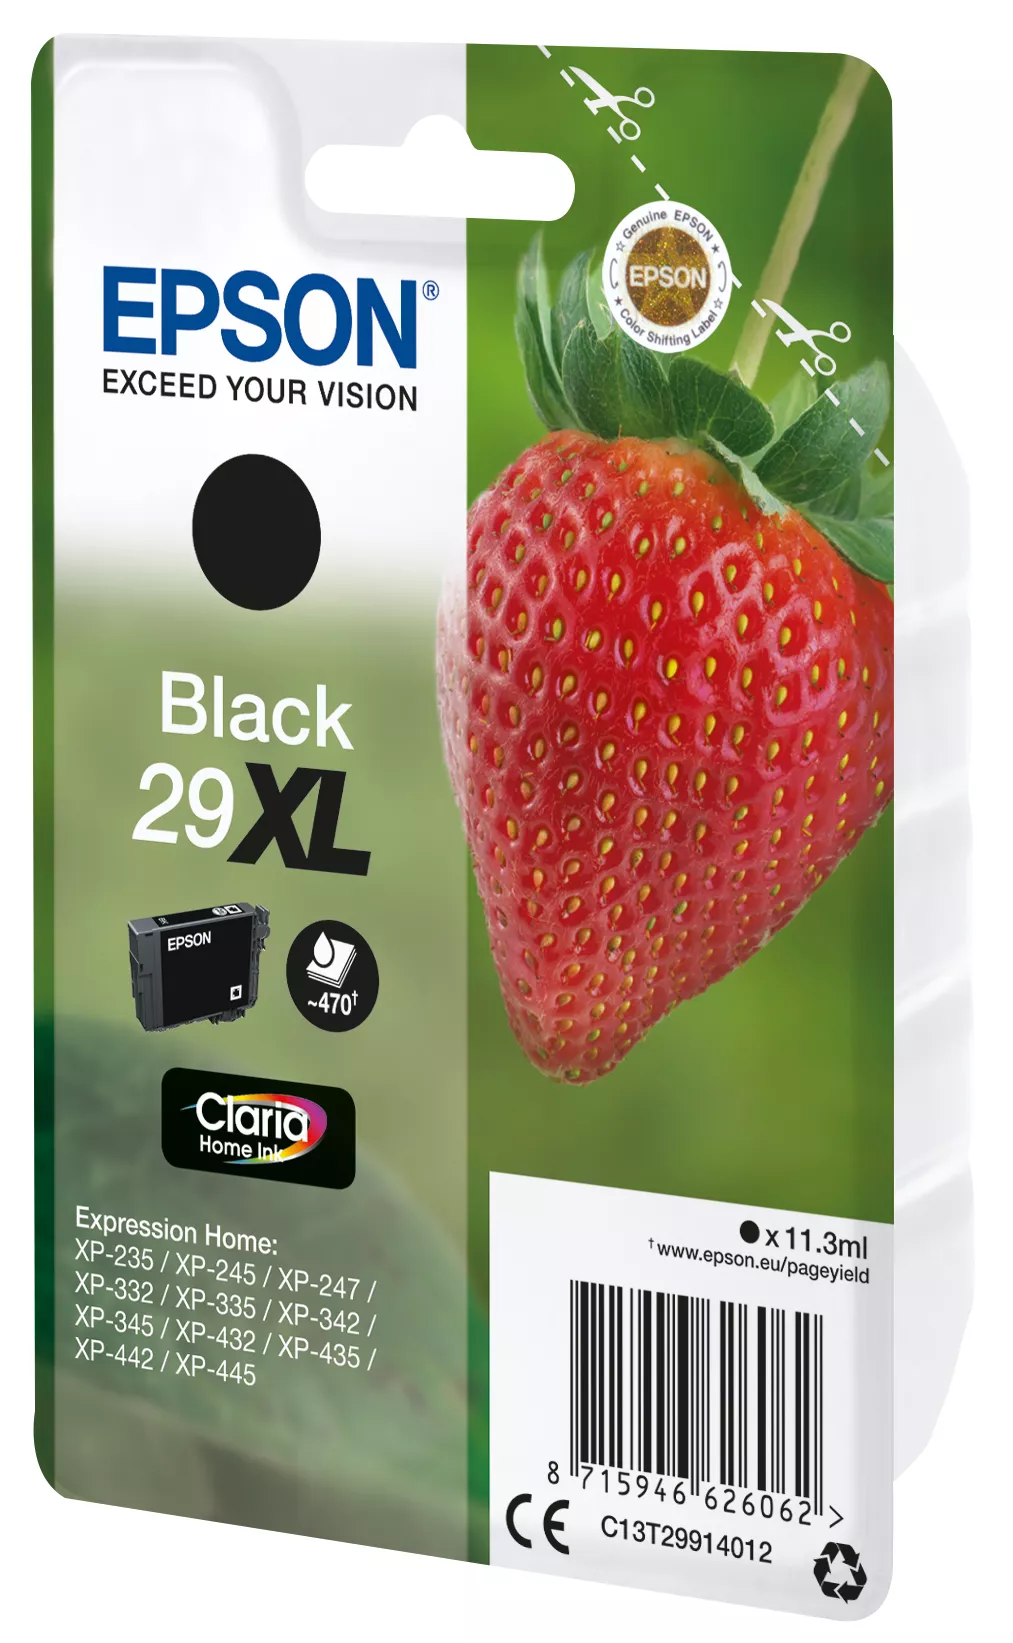 Vente EPSON Cartouche Fraise Encre Claria Home Noir Epson au meilleur prix - visuel 2